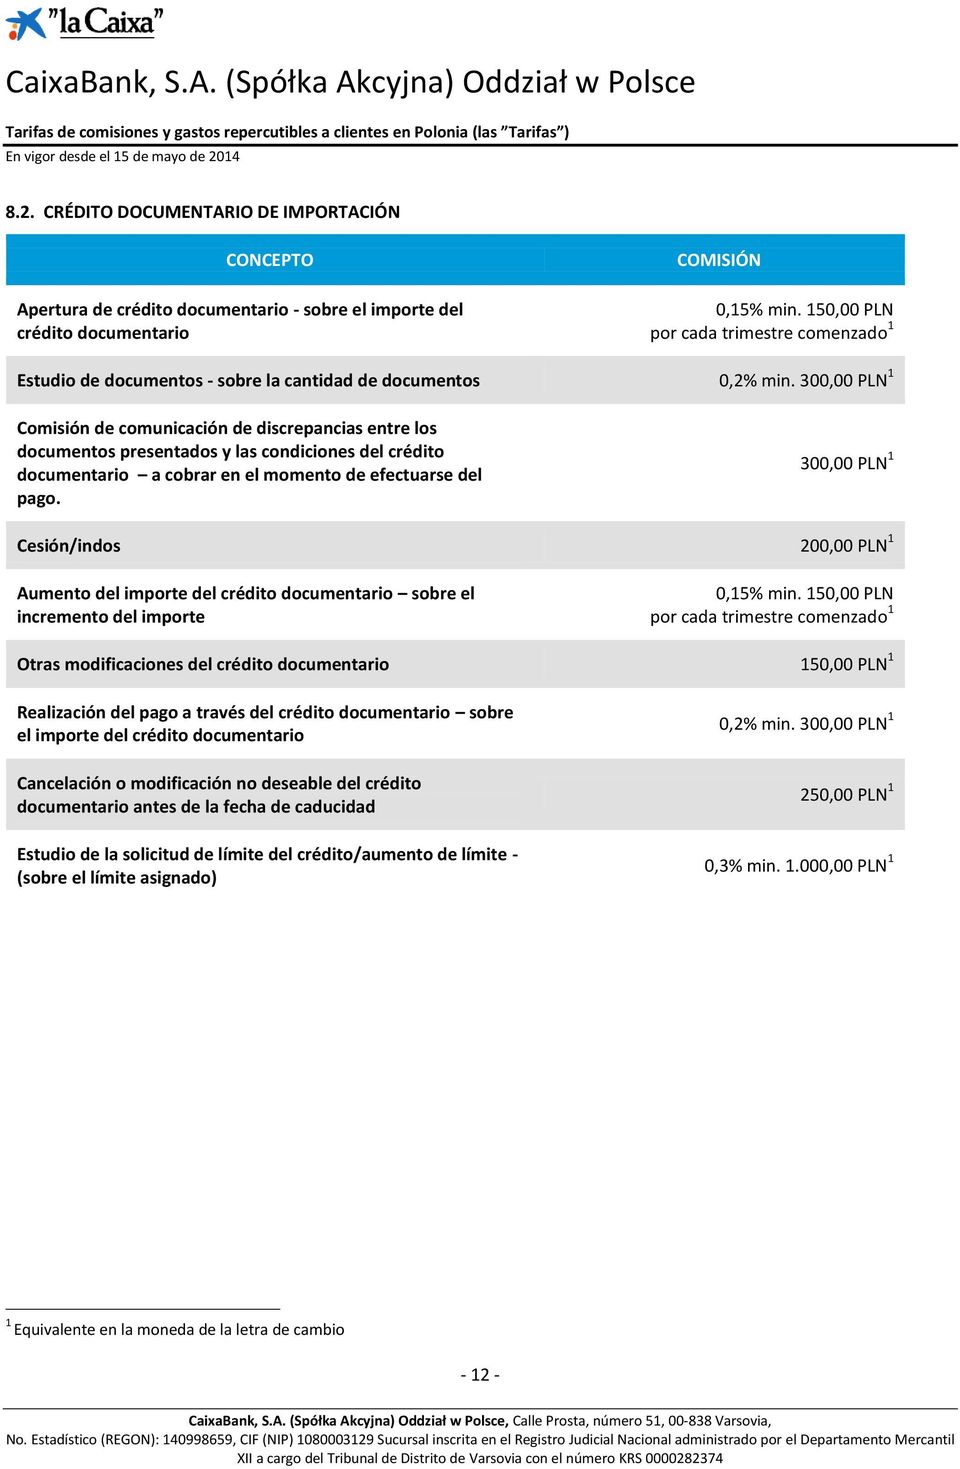 300,00 PLN 1 Comisión de comunicación de discrepancias entre los documentos presentados y las condiciones del crédito documentario a cobrar en el momento de efectuarse del pago.